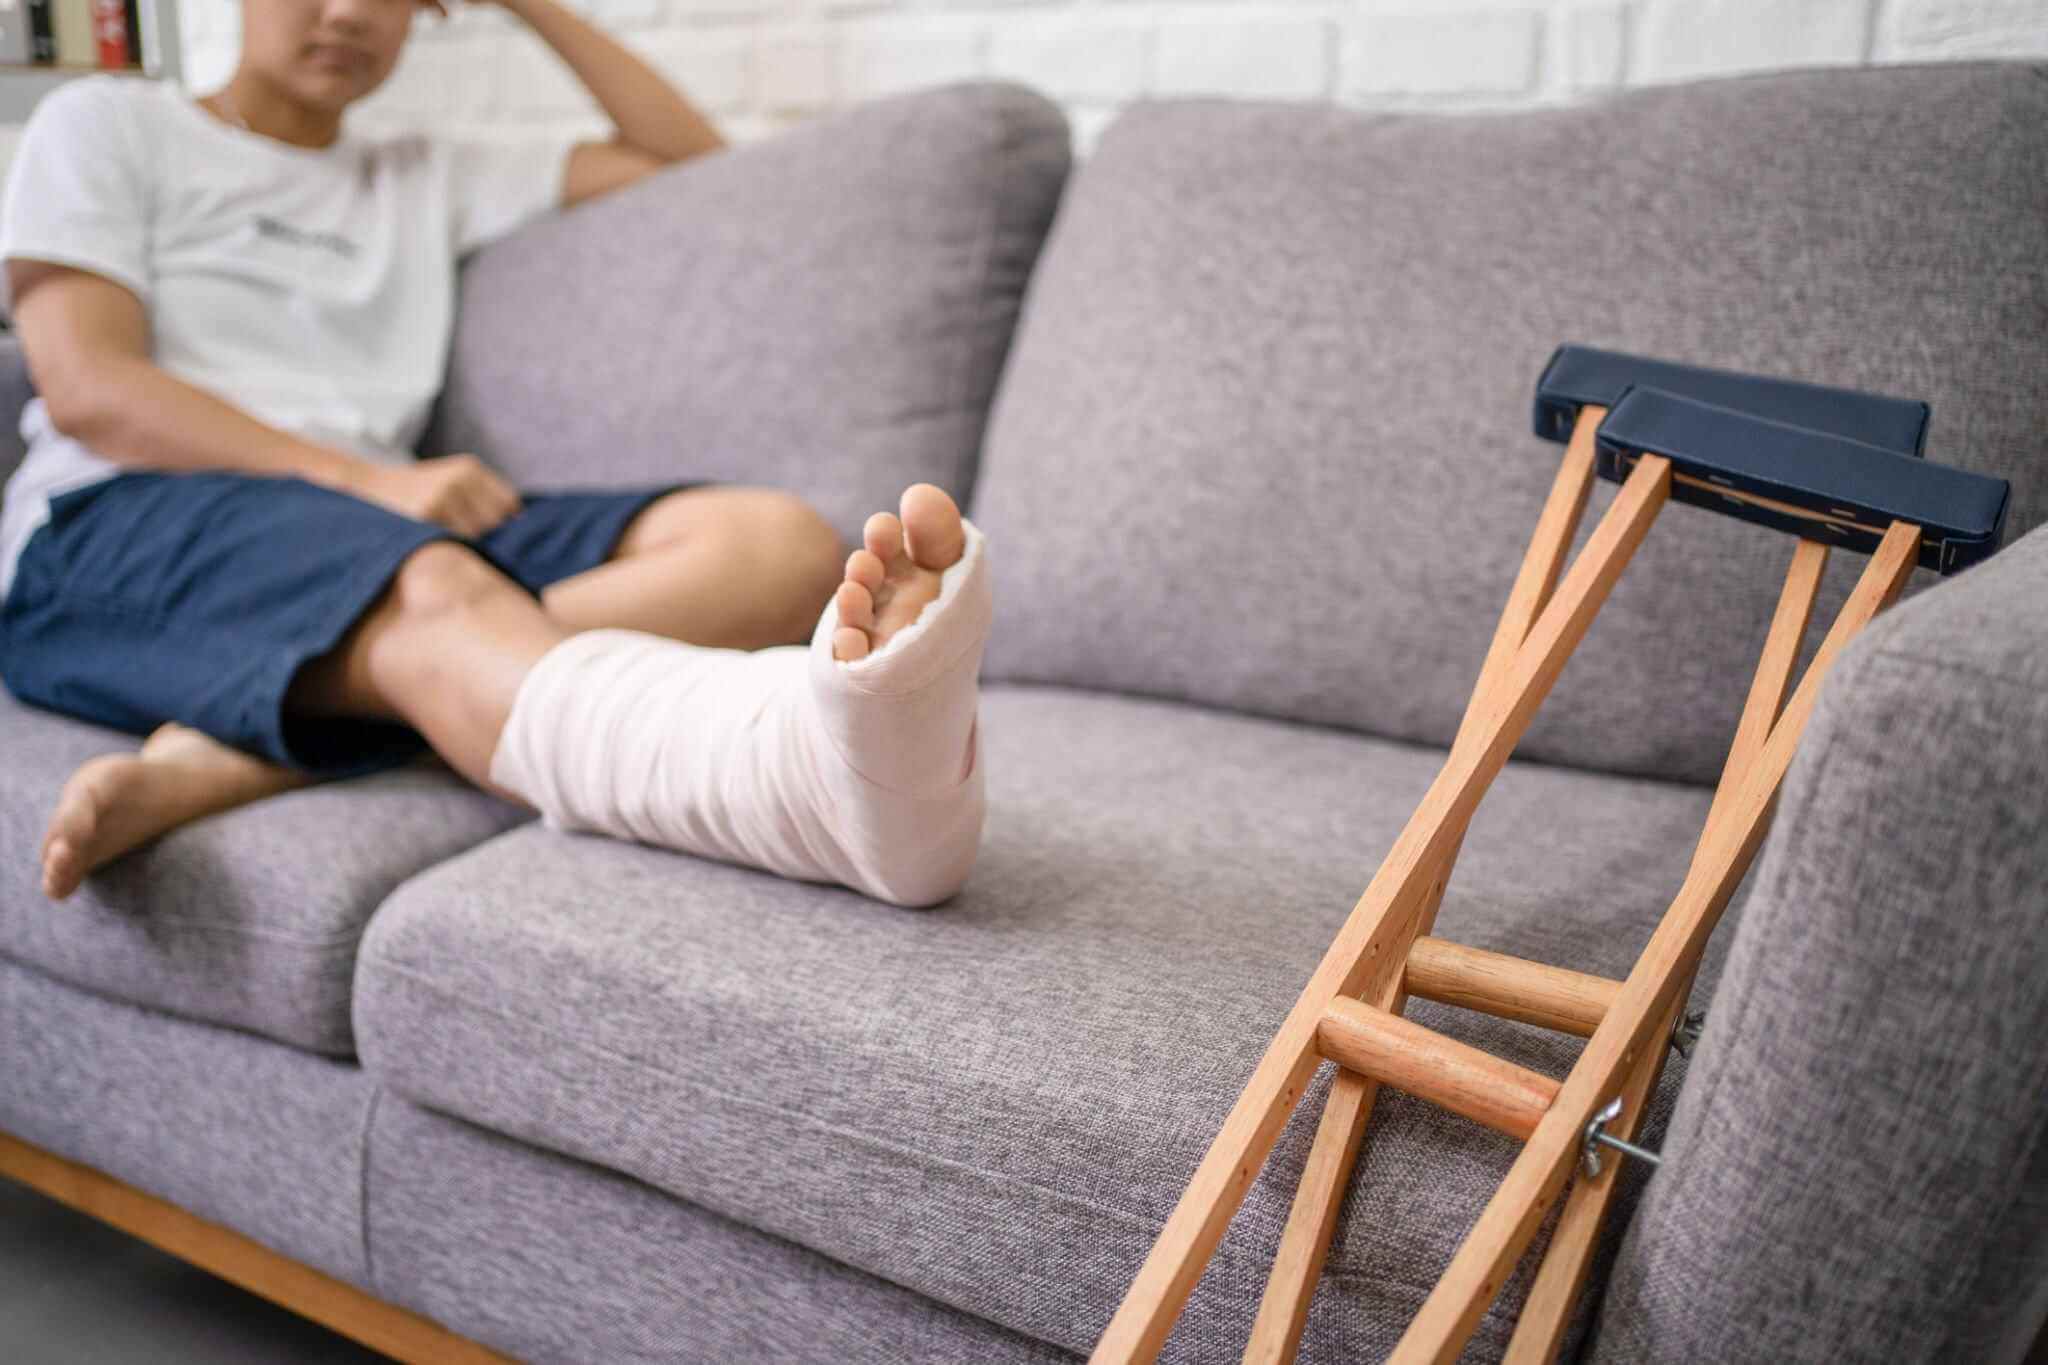 Leczenie urazów kończyny dolnej jak poprawnie rozpoznać złamanie nogi?